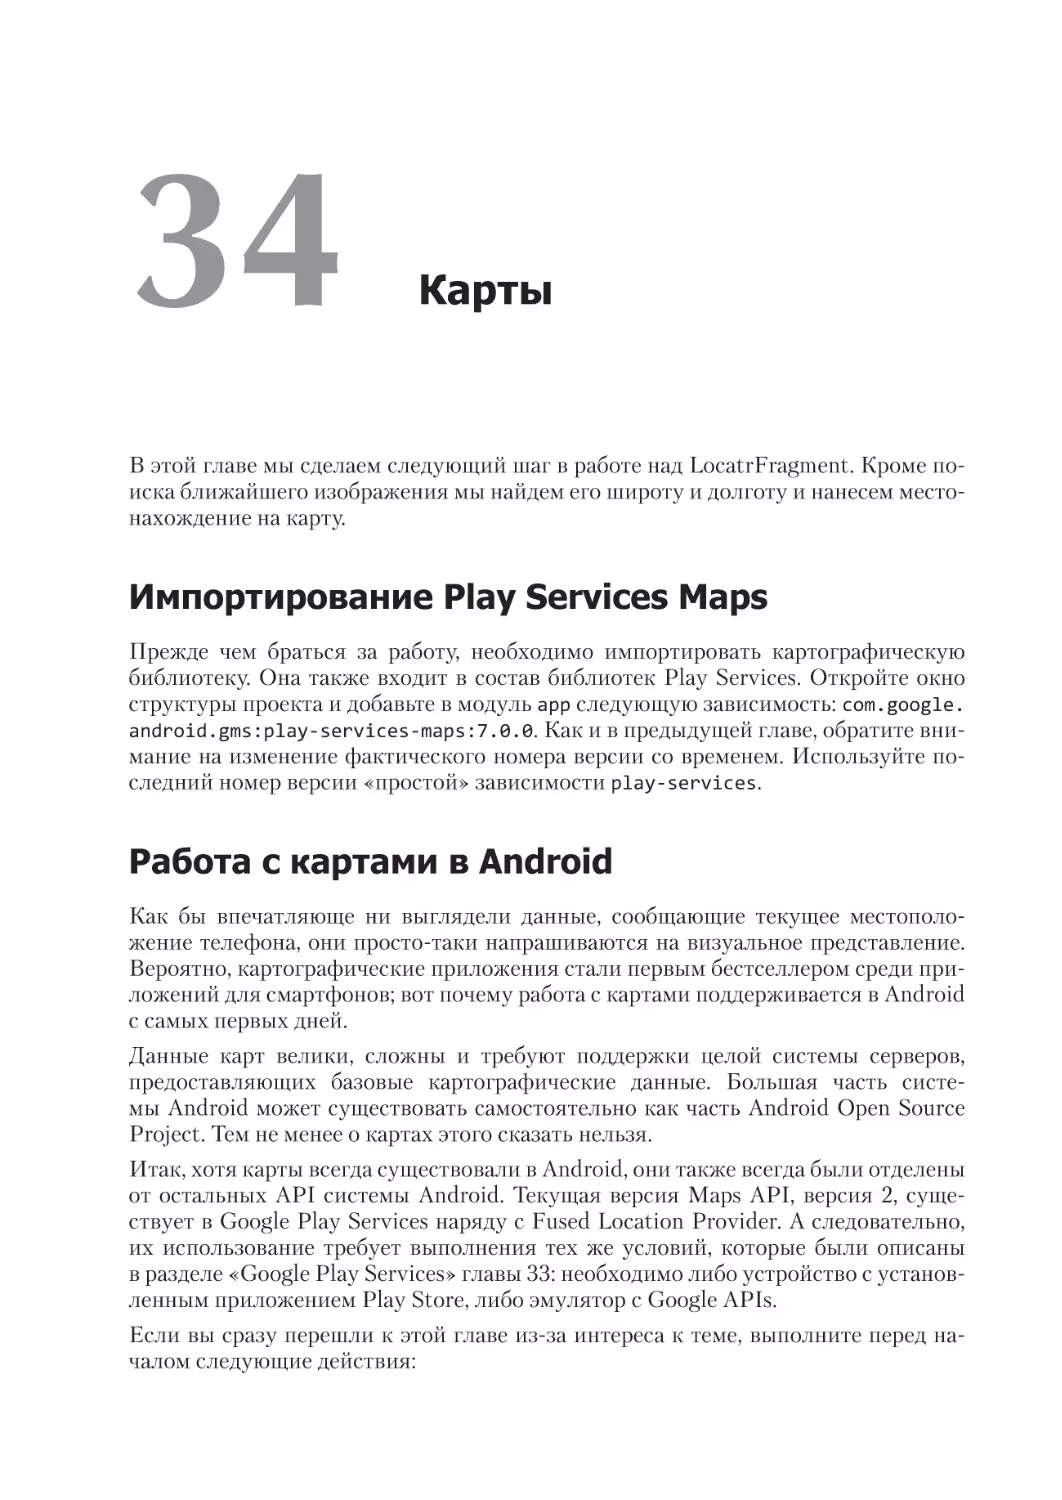 Глава 34. Карты
Импортирование Play Services Maps
Работа с картами в Android